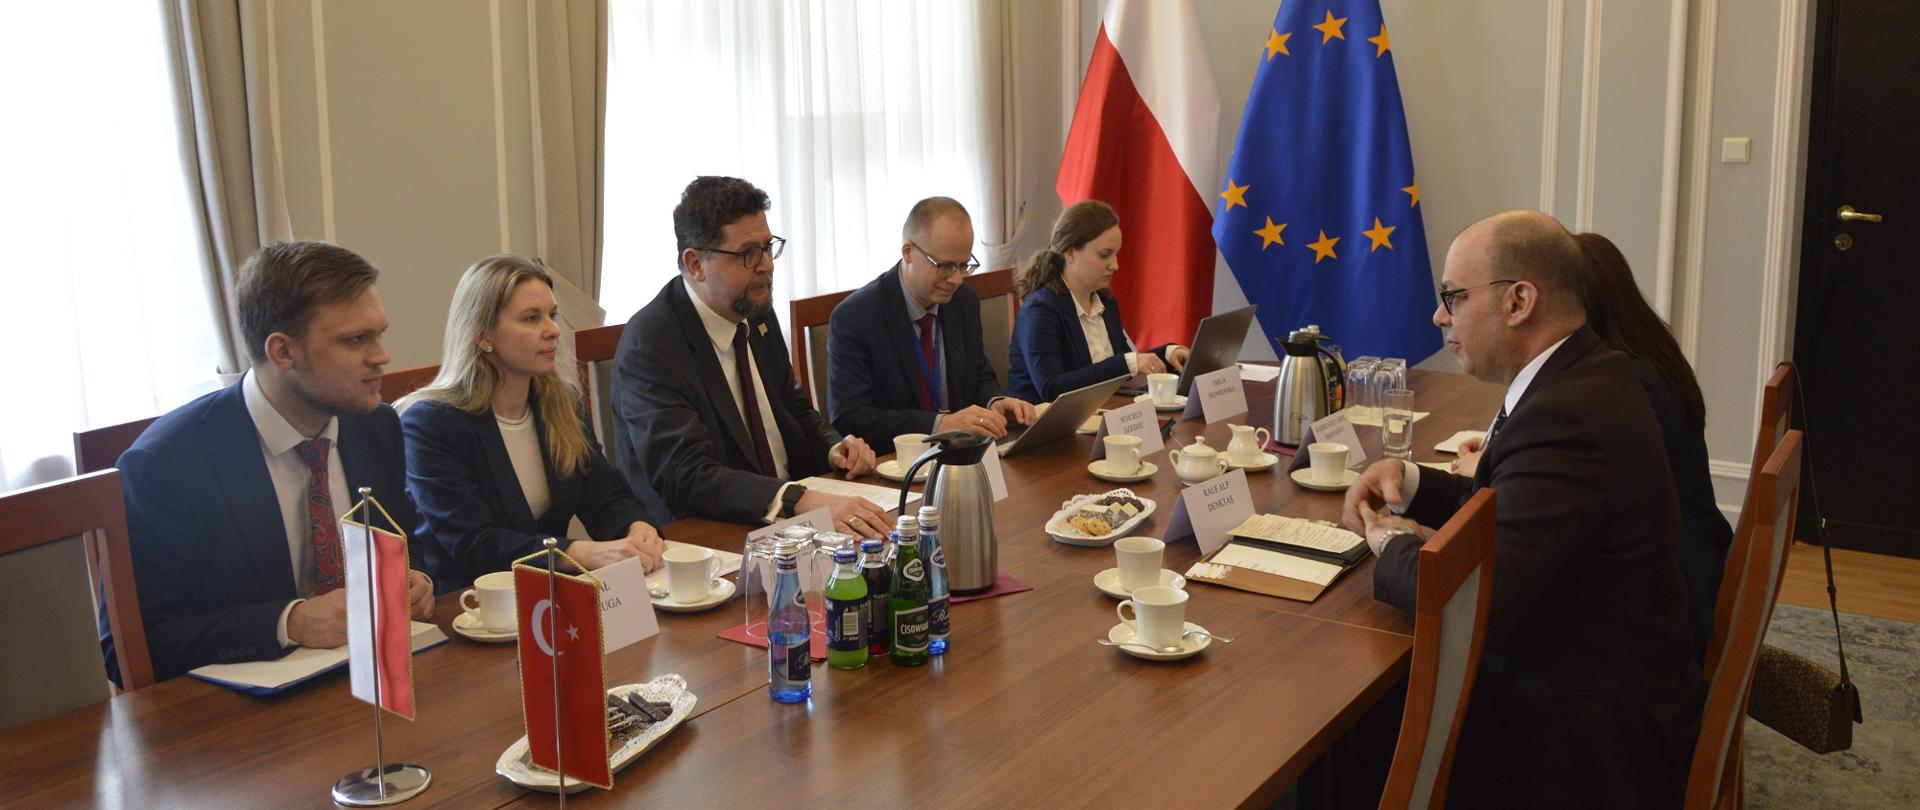 W małej sali przy podłużnym stole siedzi kilka rozmawiających osób, za stołem pod ścianą flagi Polski i UE.